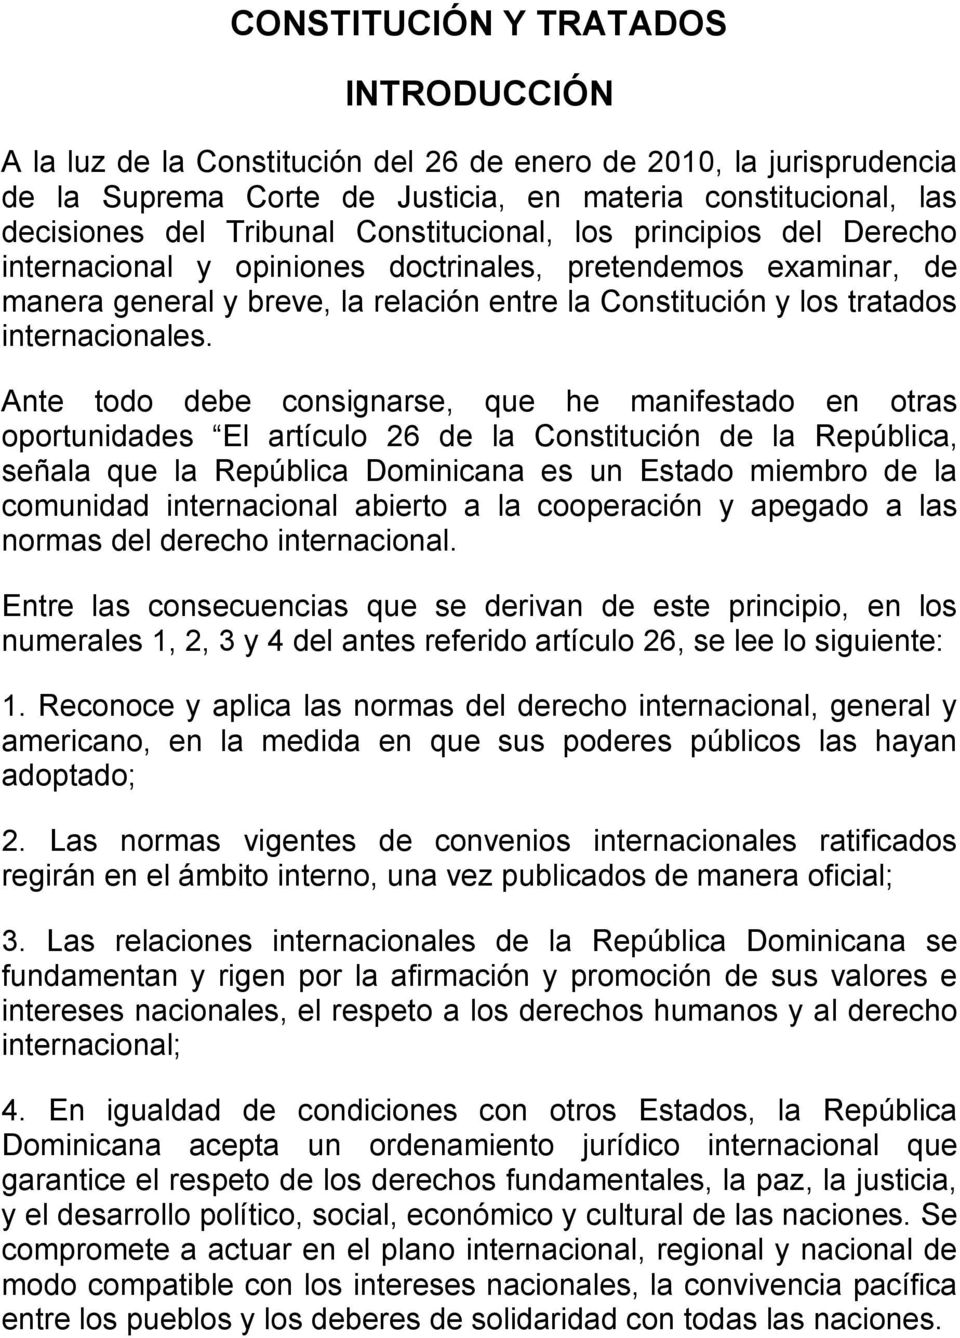 Ante todo debe consignarse, que he manifestado en otras oportunidades El artículo 26 de la Constitución de la República, señala que la República Dominicana es un Estado miembro de la comunidad